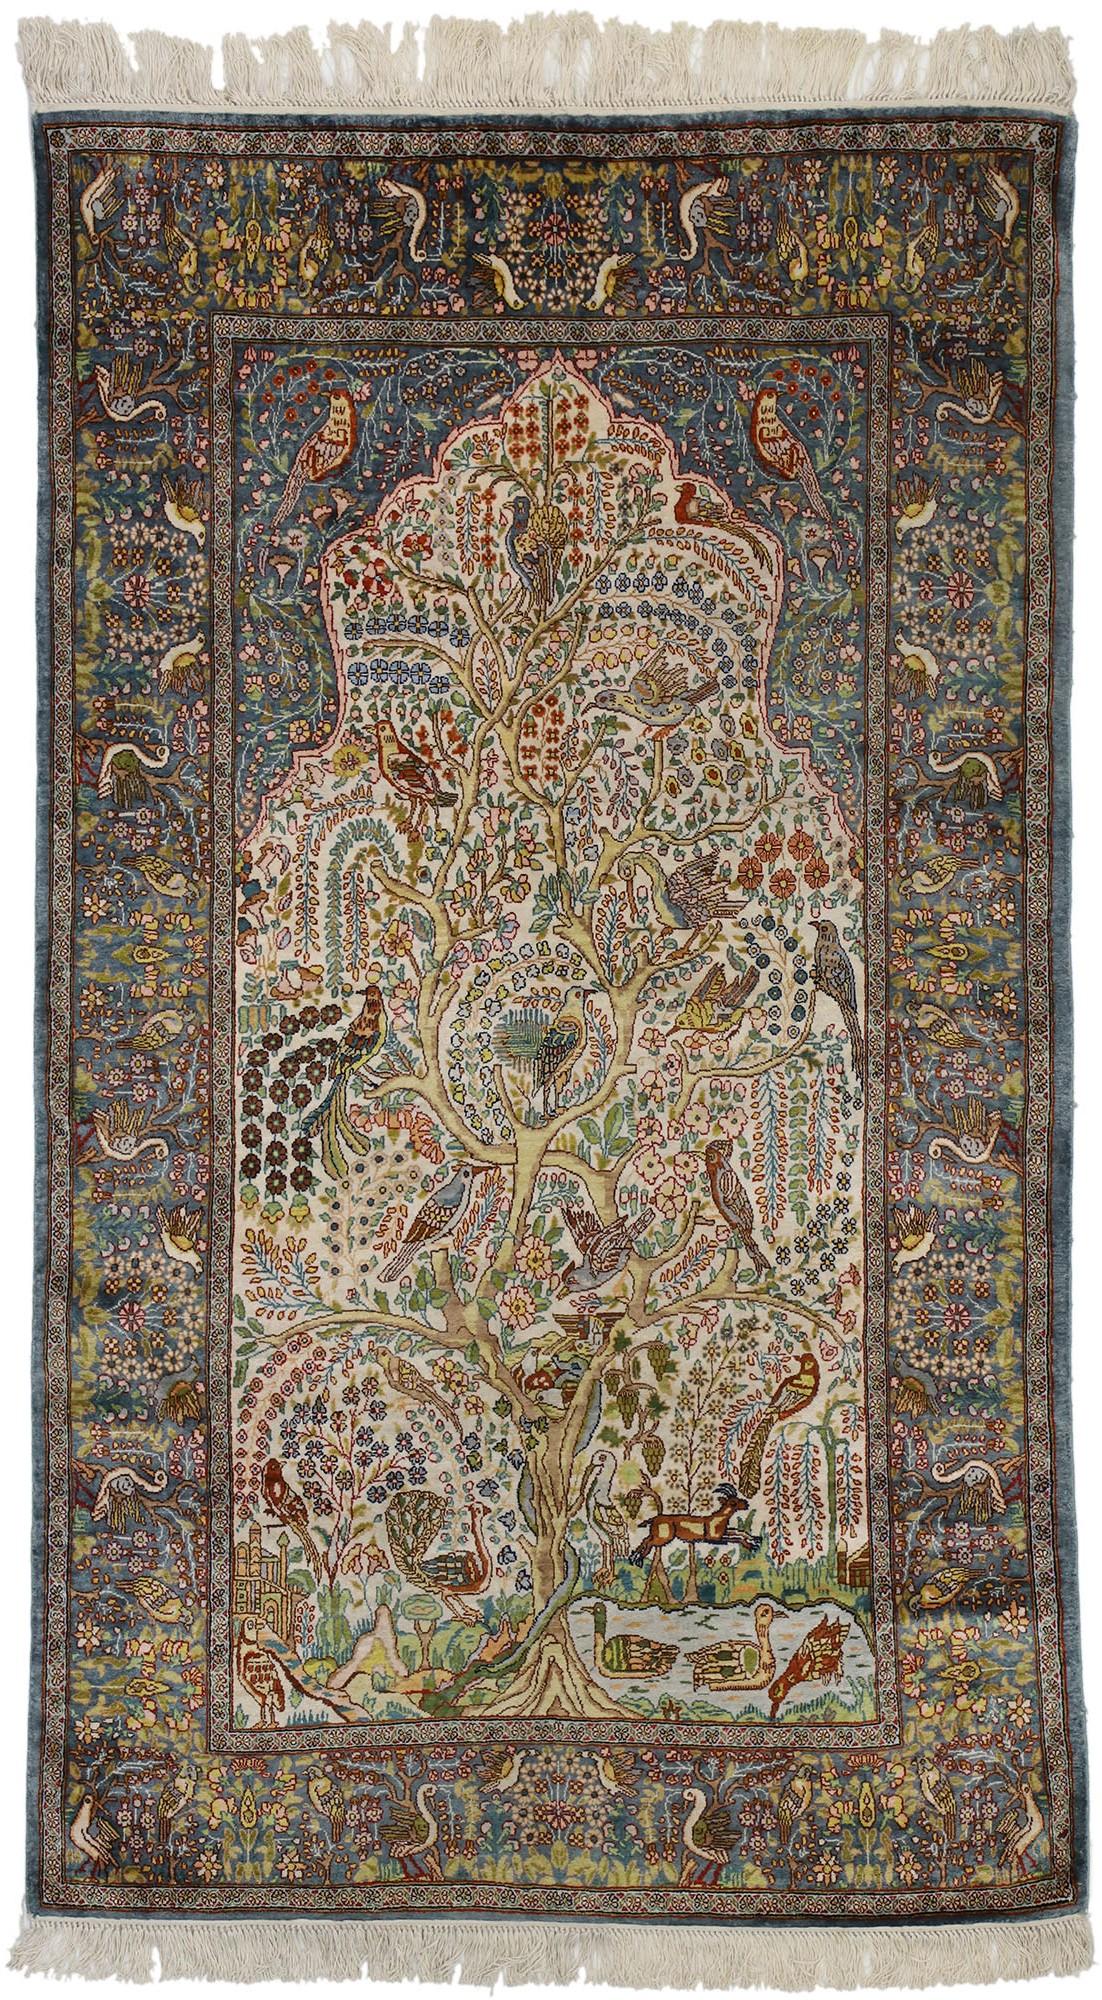 77259 Arbre de vie design vintage tapis de prière turc Hereke, tapisserie murale Jardin du Paradis. Ce tapis de prière Hereke vintage en soie nouée à la main présente un motif d'arbre de vie et un style ottoman. Présentant un tapis de prière à la